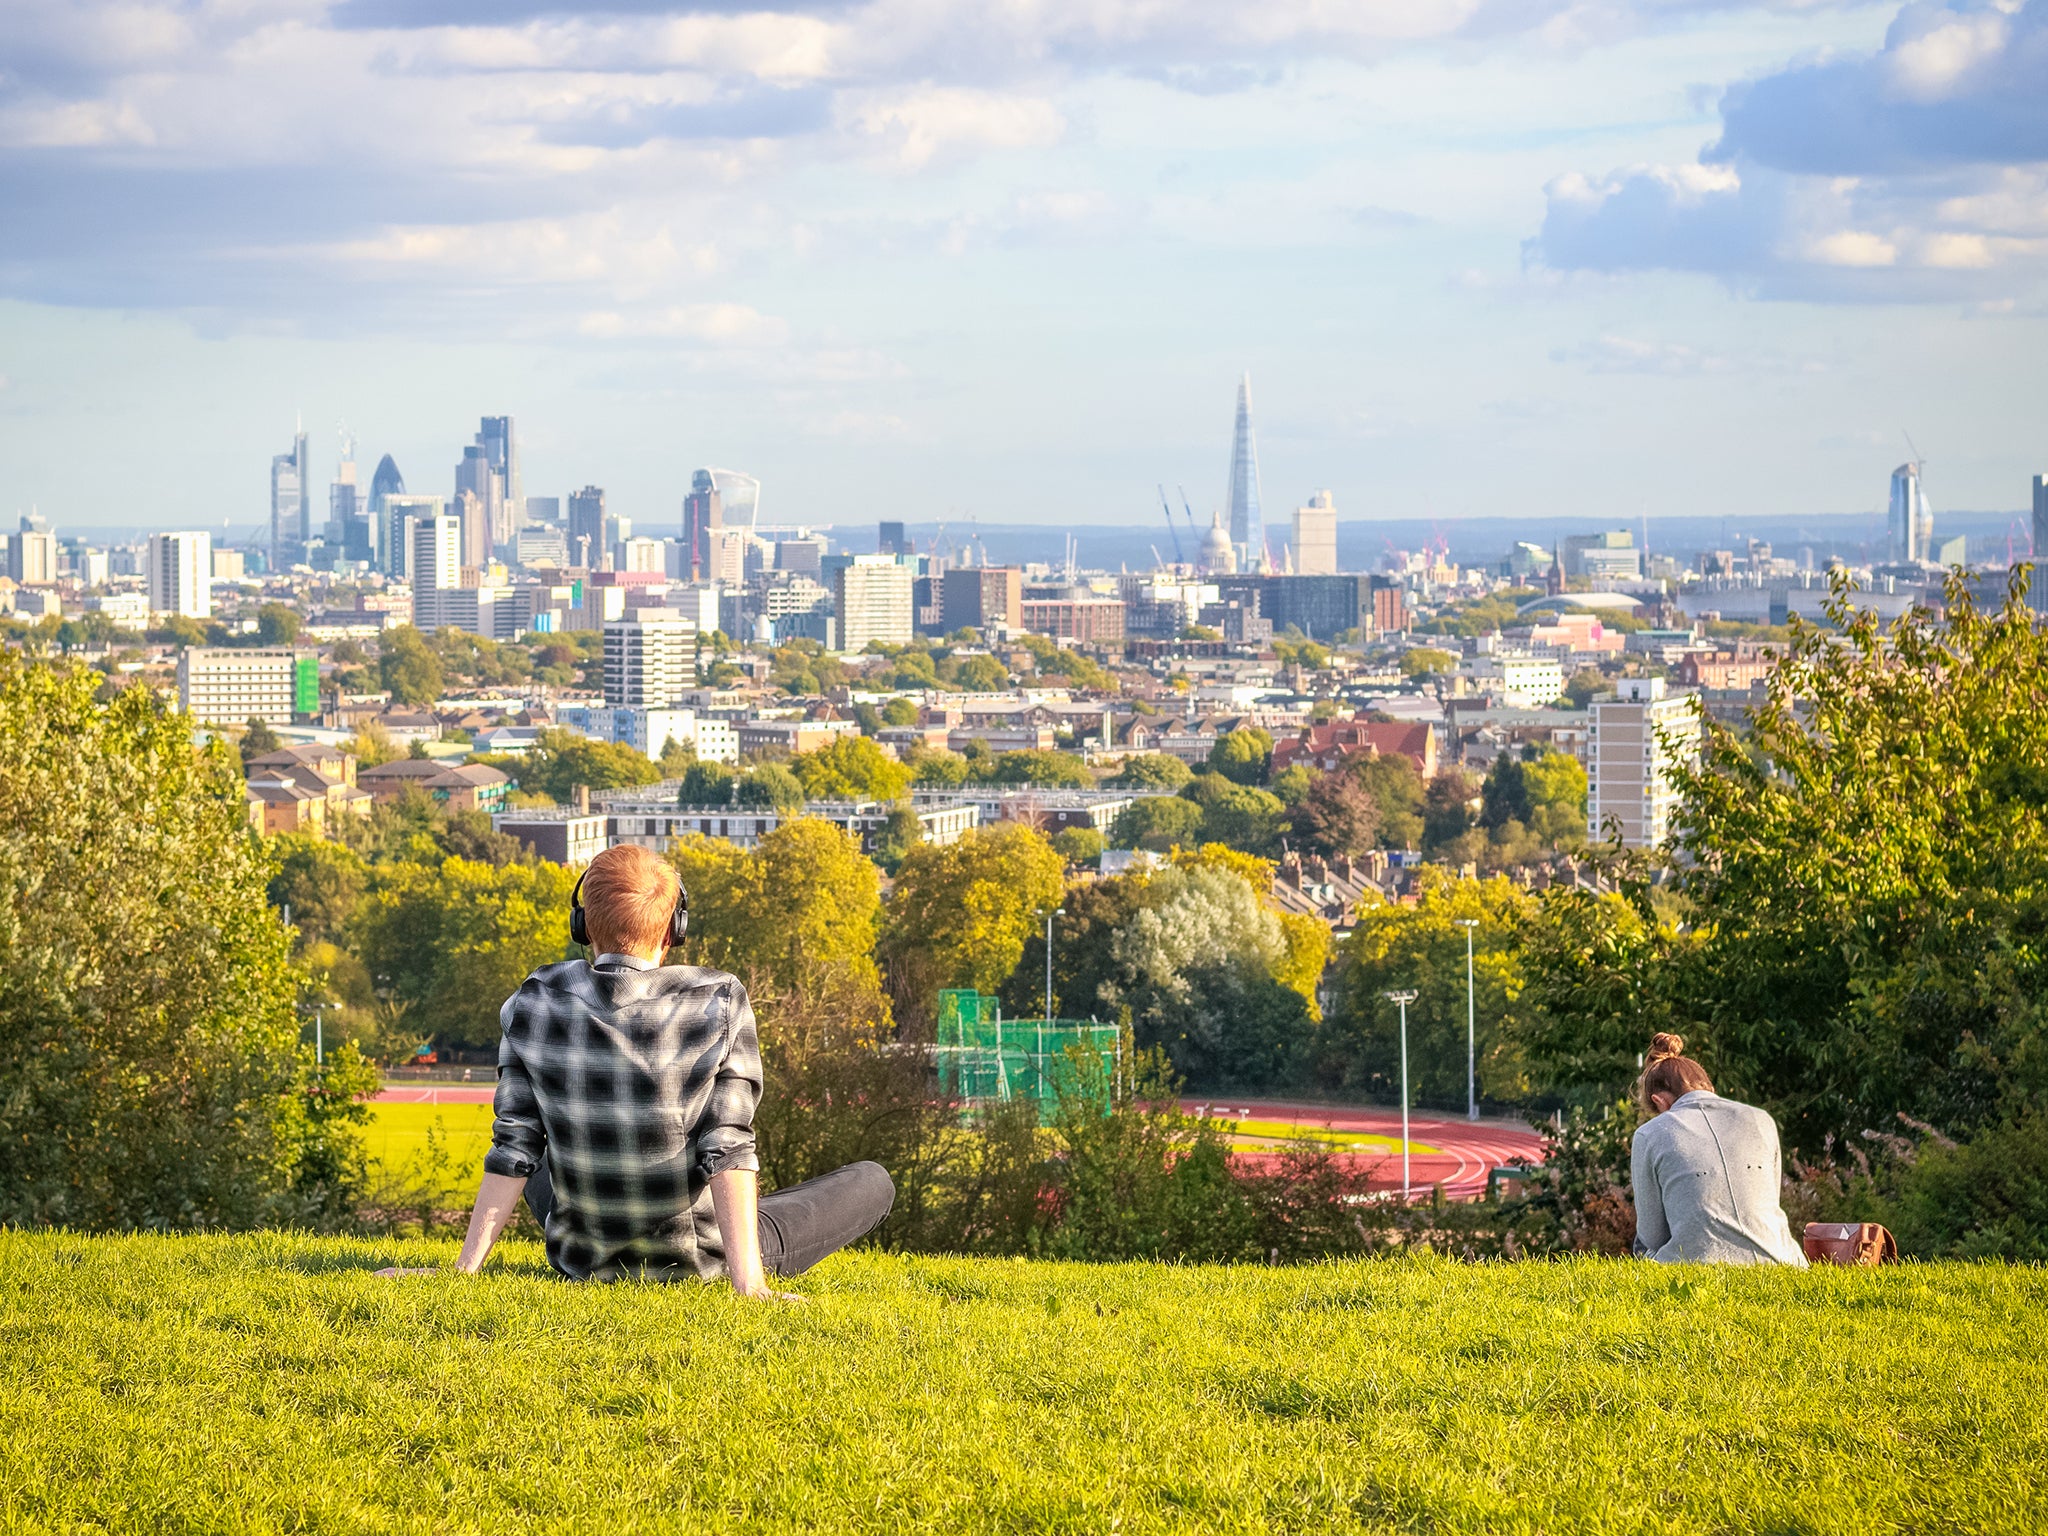 The London skyline as seen from Hampstead Heath